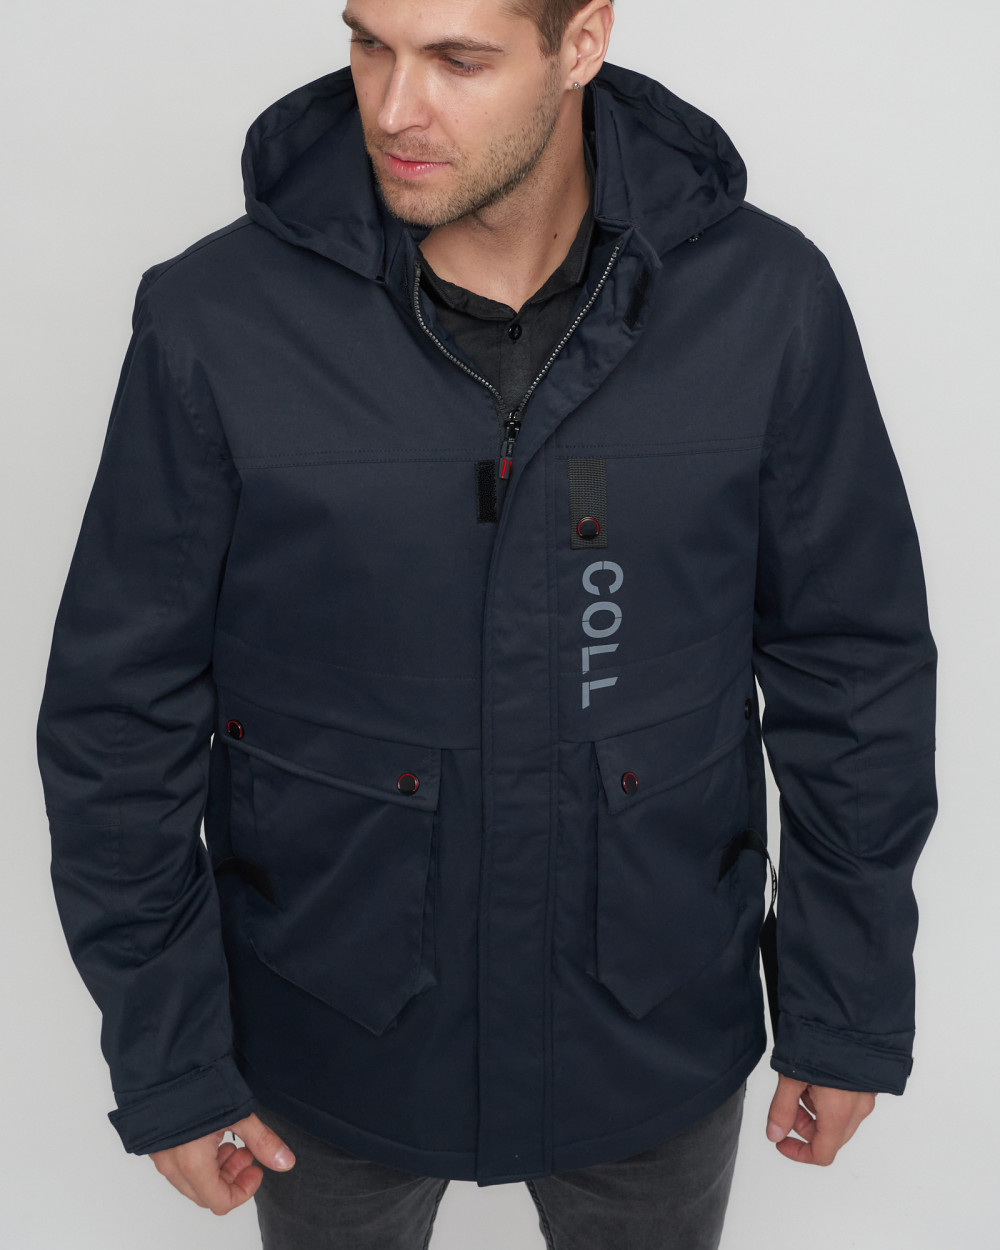 Купить куртку мужскую спортивную весеннюю оптом от производителя недорого в Москве 8600TS 1